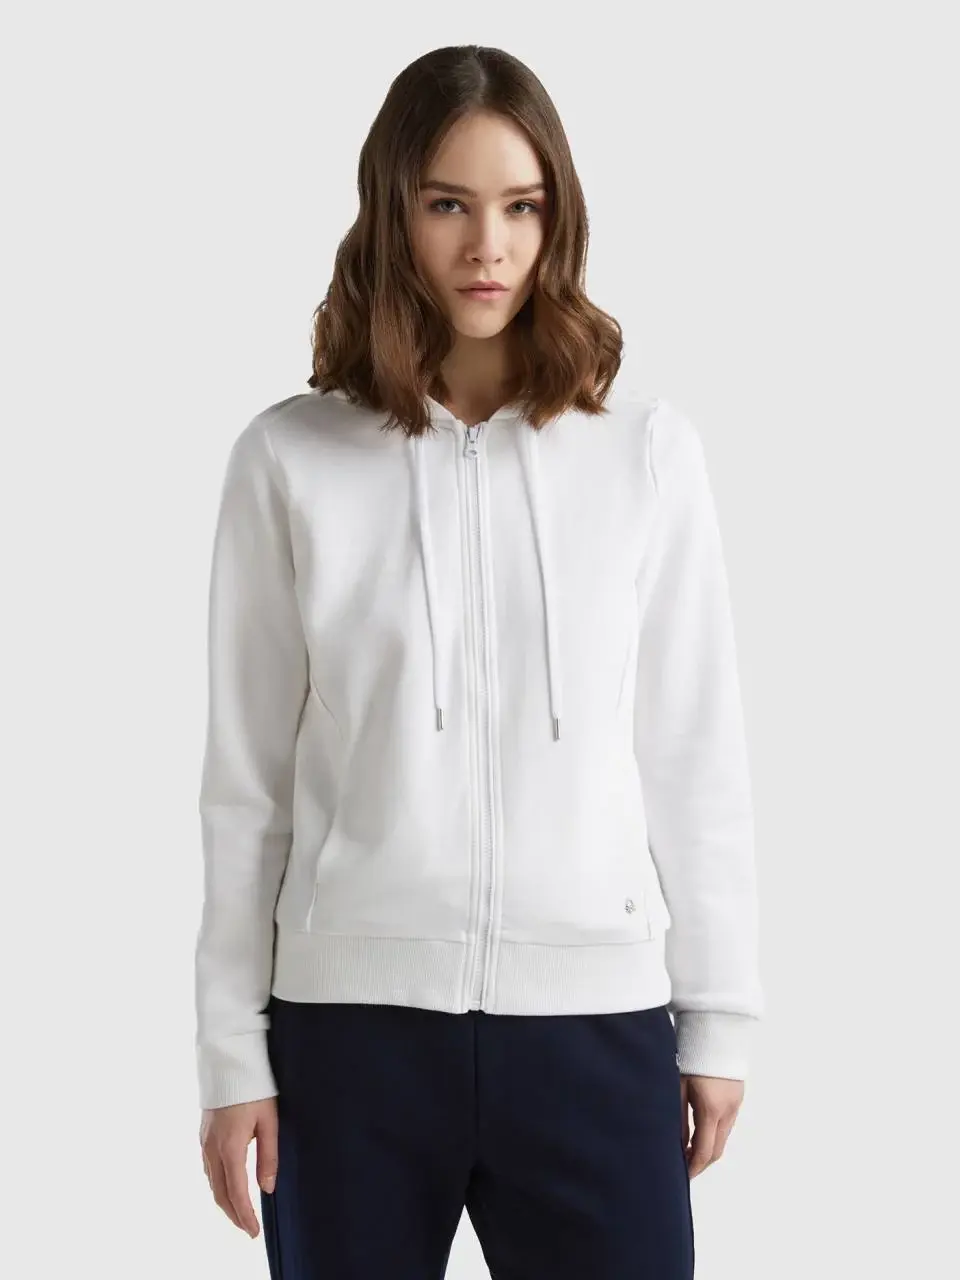 Benetton 100% cotton sweatshirt with zip and hood. 1